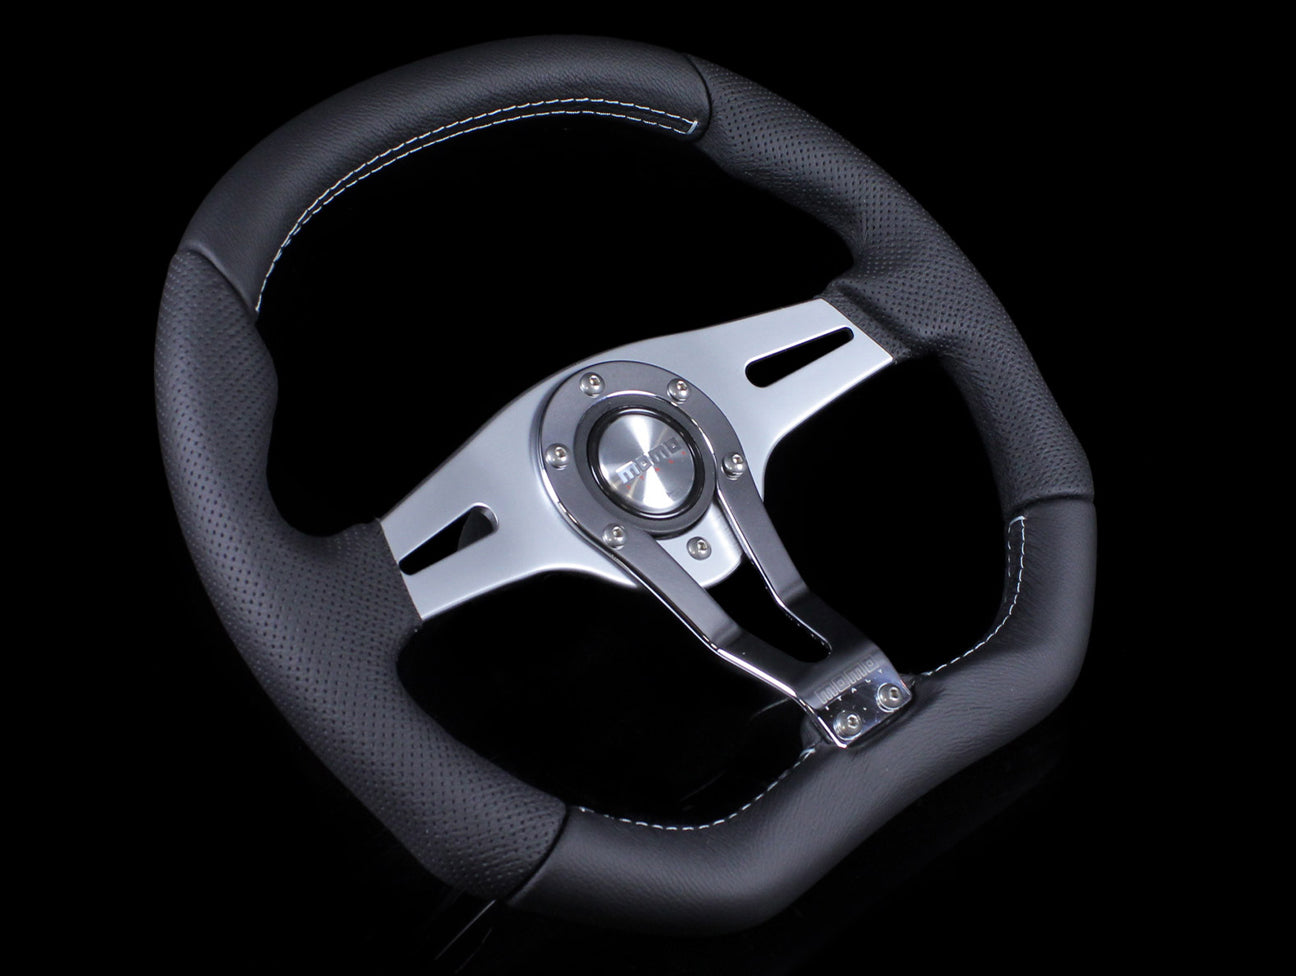 Momo Trek R 350mm Steering Wheel